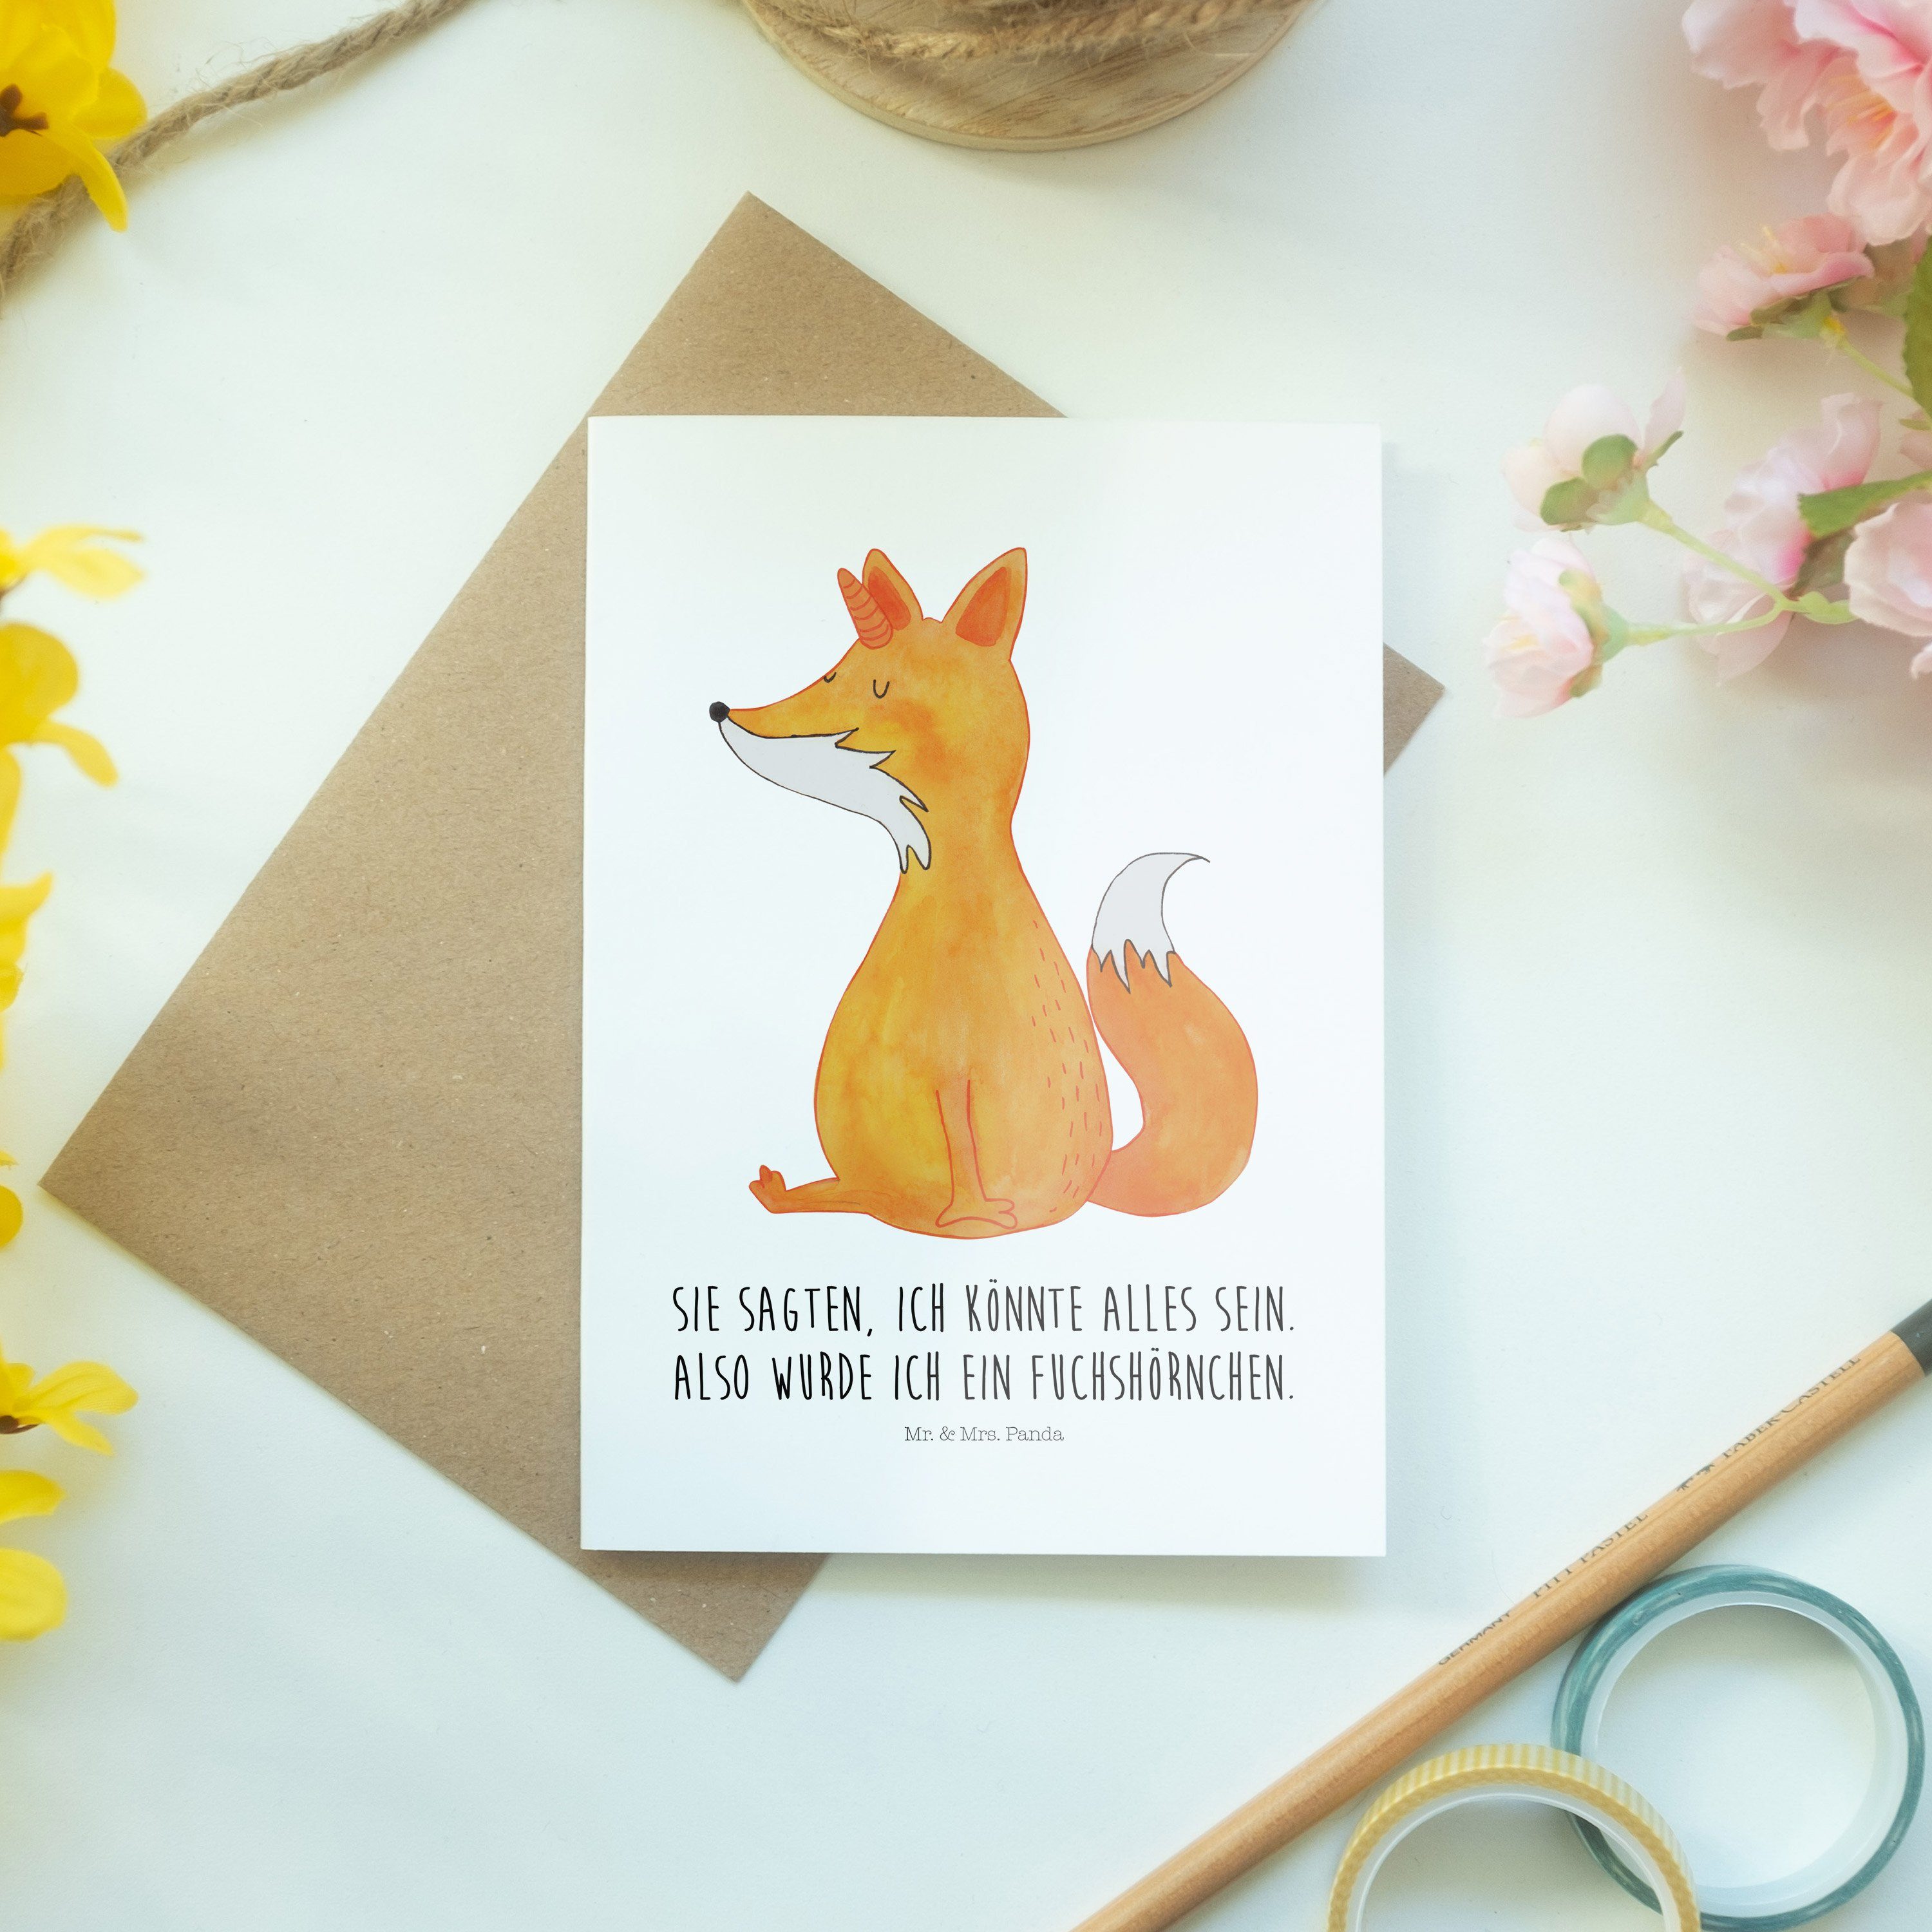 Mr. & Weiß Klappkarte, Fuchshörnchen - Hochzeitskarte Grußkarte Mrs. - Panda Geschenk, Unicorns